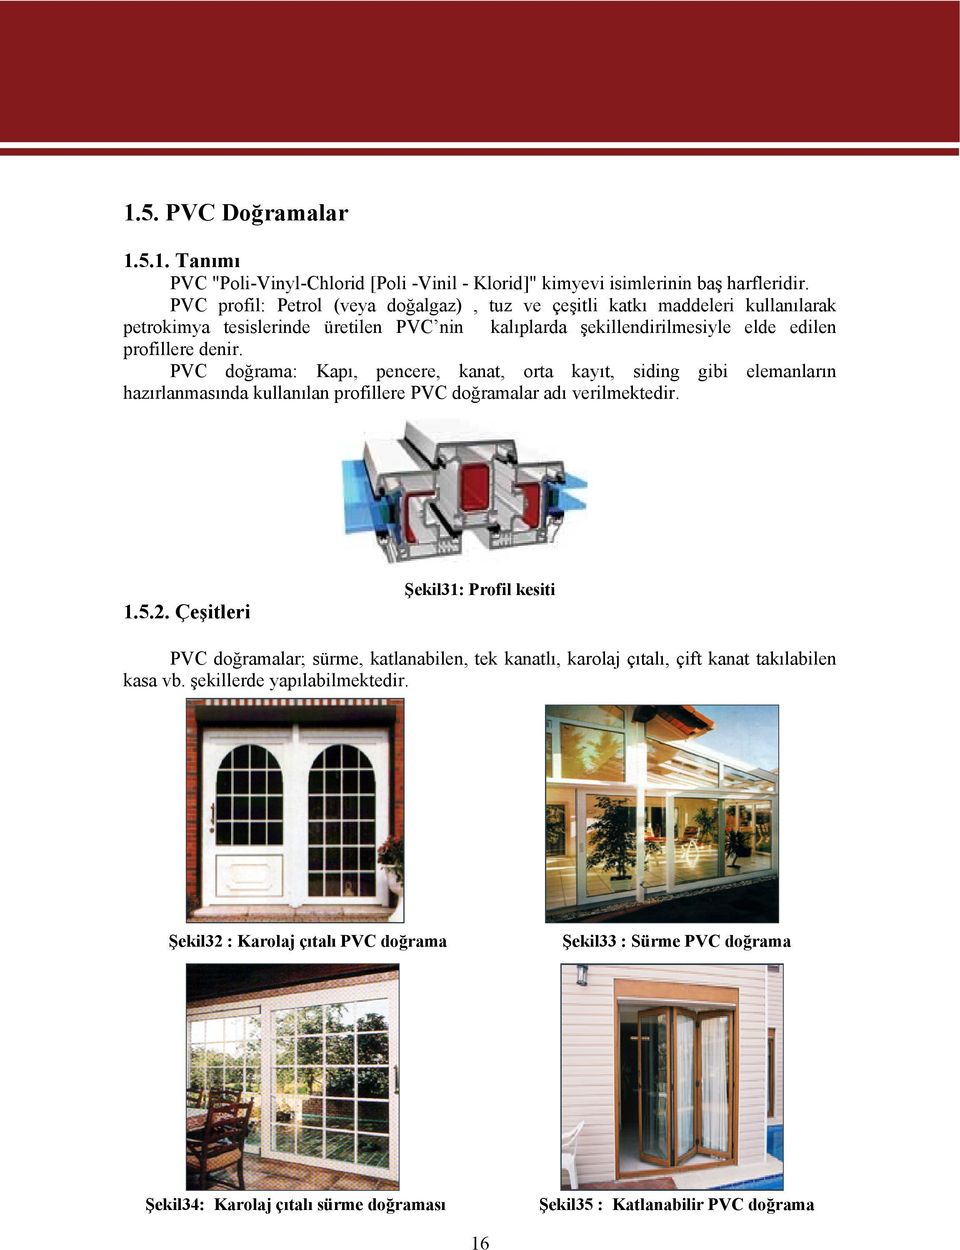 PVC doğrama: Kapı, pencere, kanat, orta kayıt, siding gibi elemanların hazırlanmasında kullanılan profillere PVC doğramalar adı verilmektedir. 1.5.2.